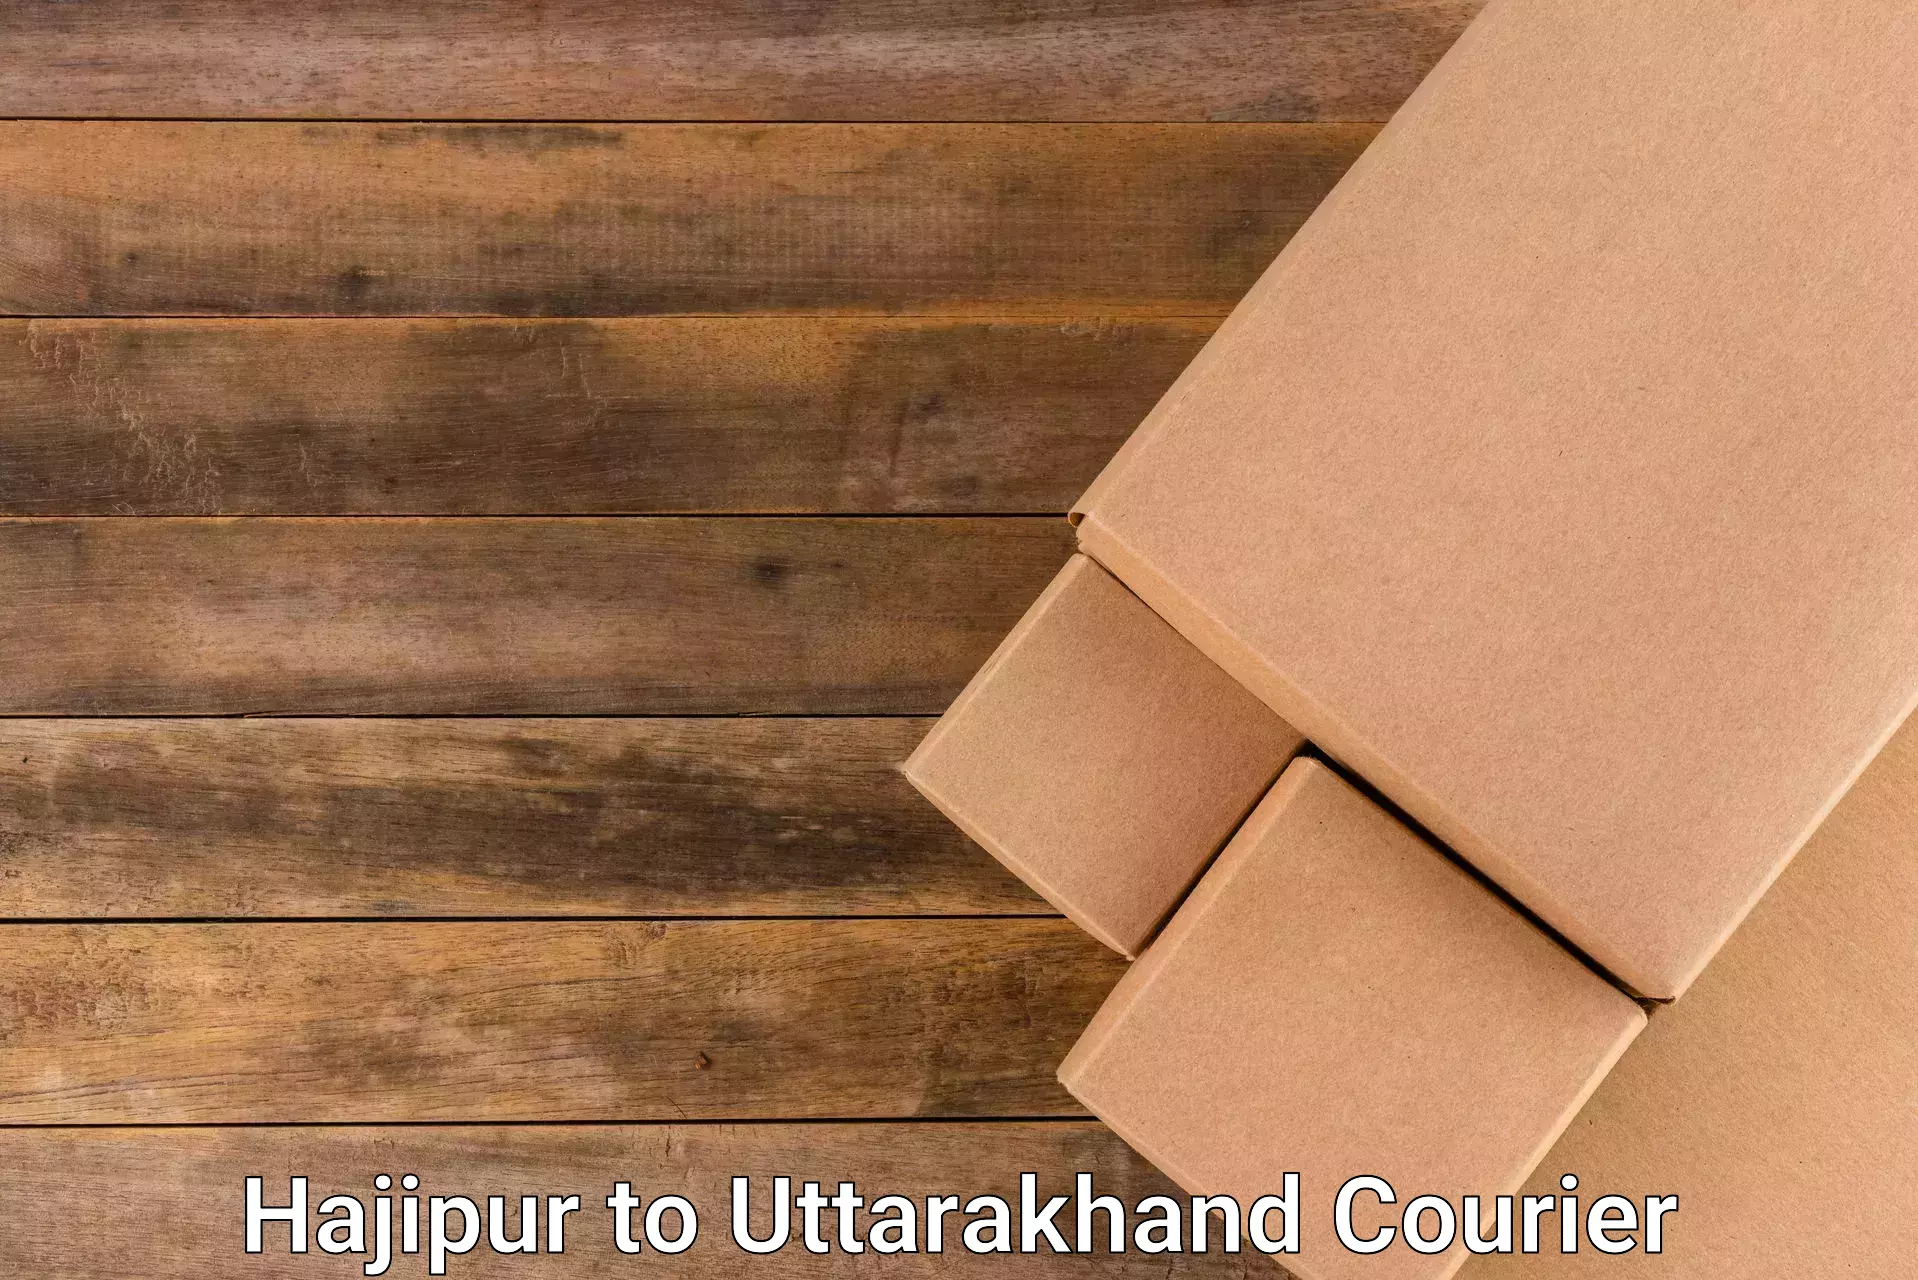 24/7 courier service Hajipur to IIT Roorkee